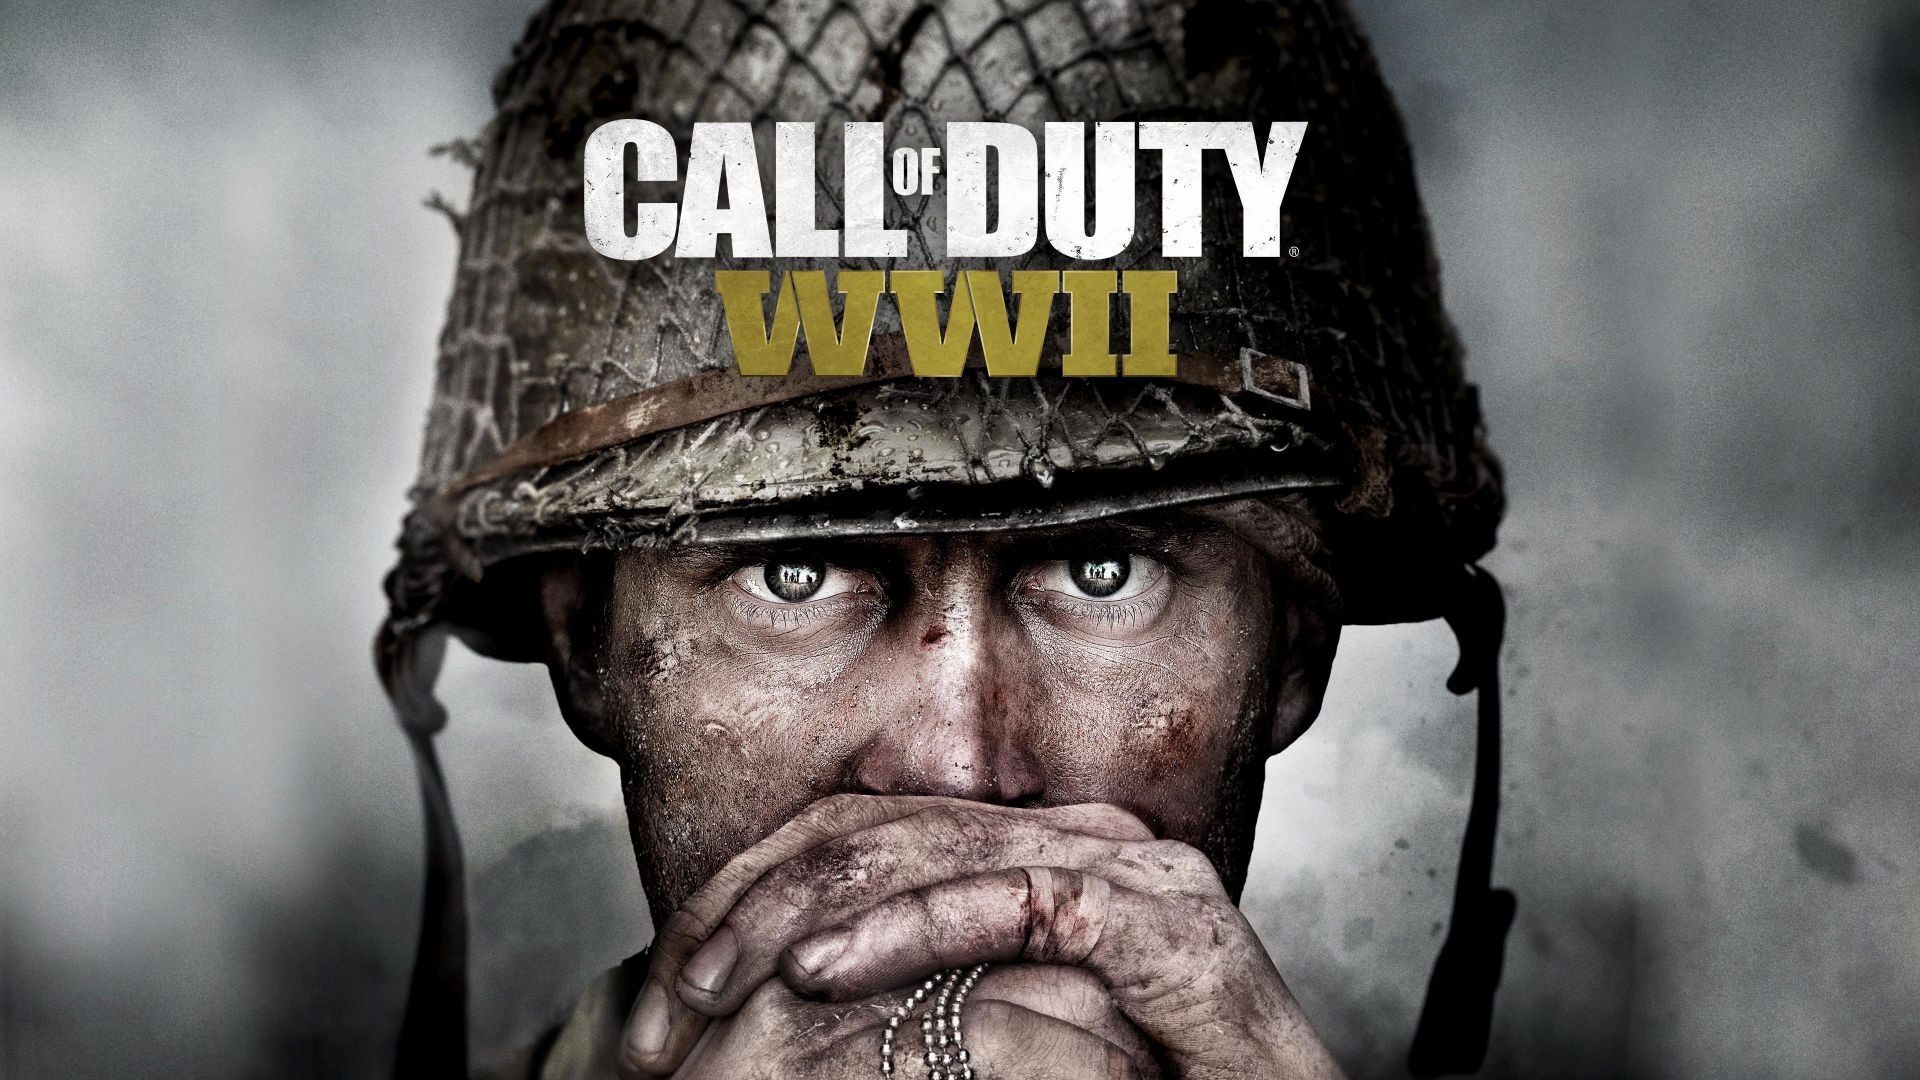 Call of Duty WWII (4 часть, финал)